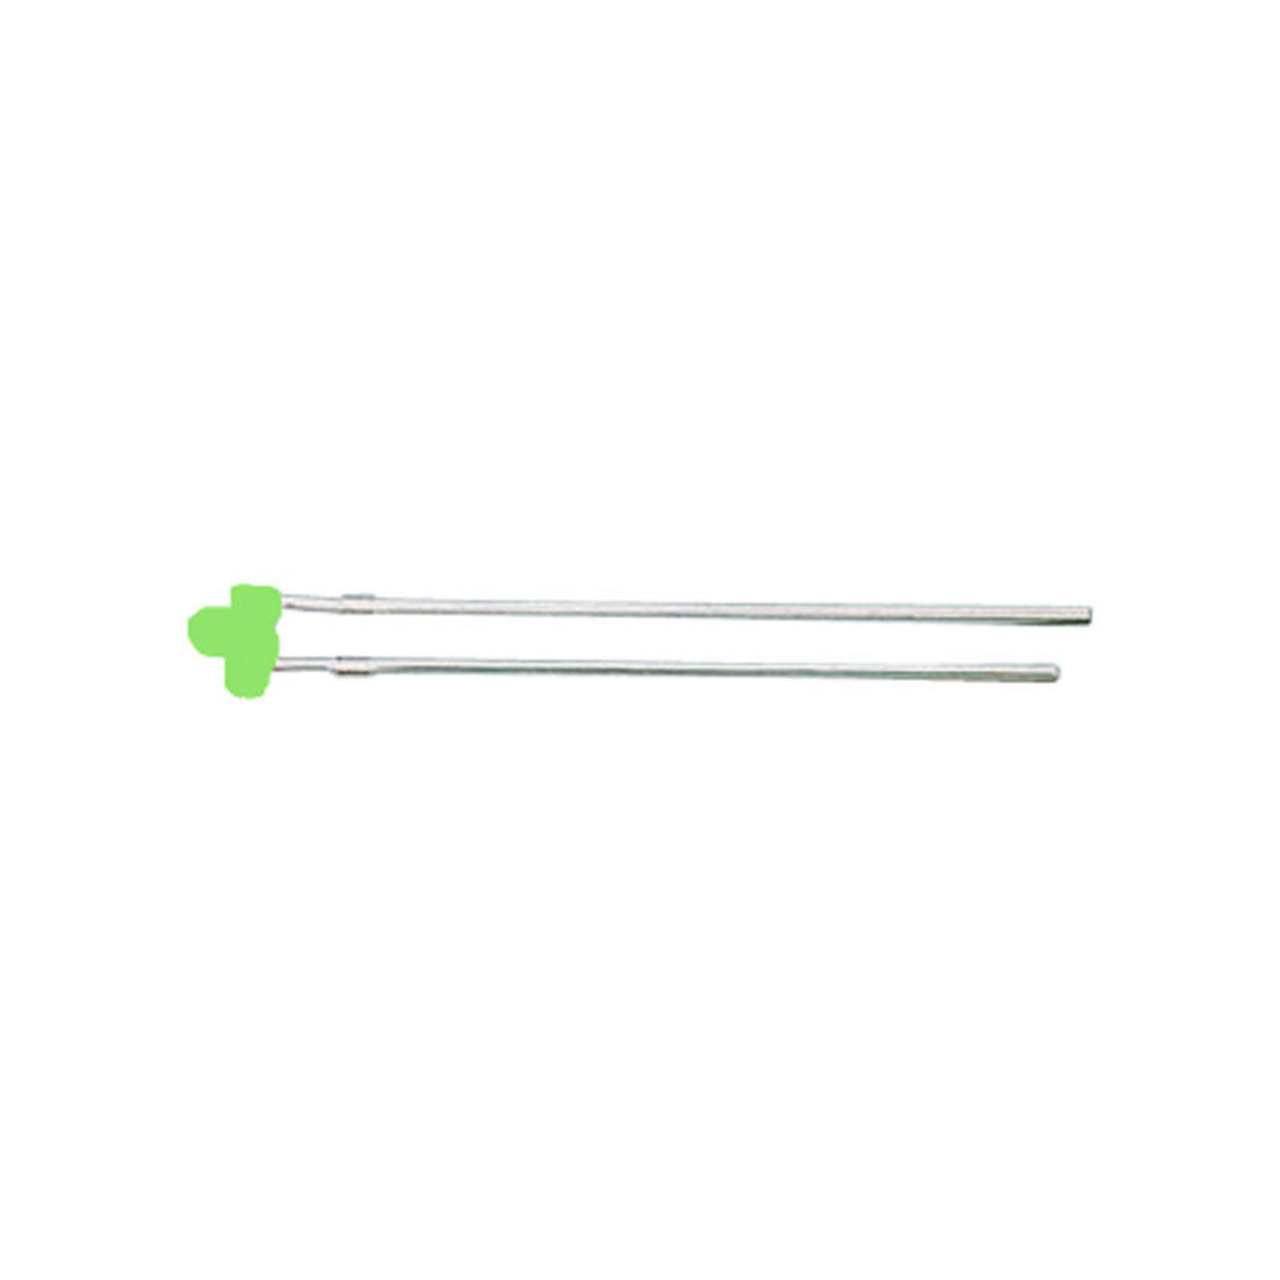 10x Miniatur-LED 1-8 mm Grün unter Komponenten